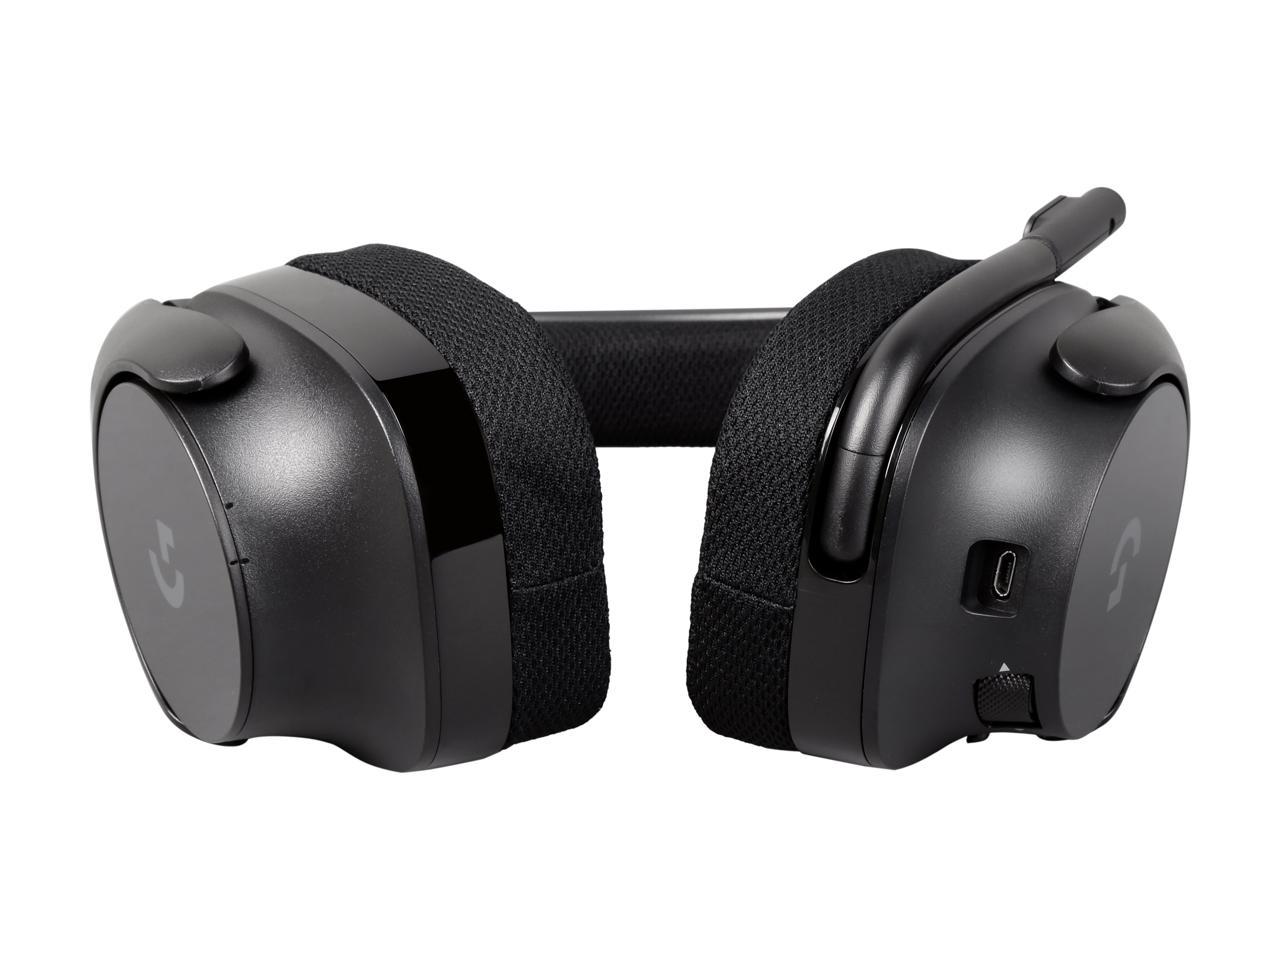 Logitech G533 Wireless DTS 7.1 Surround Sound Gaming Headset